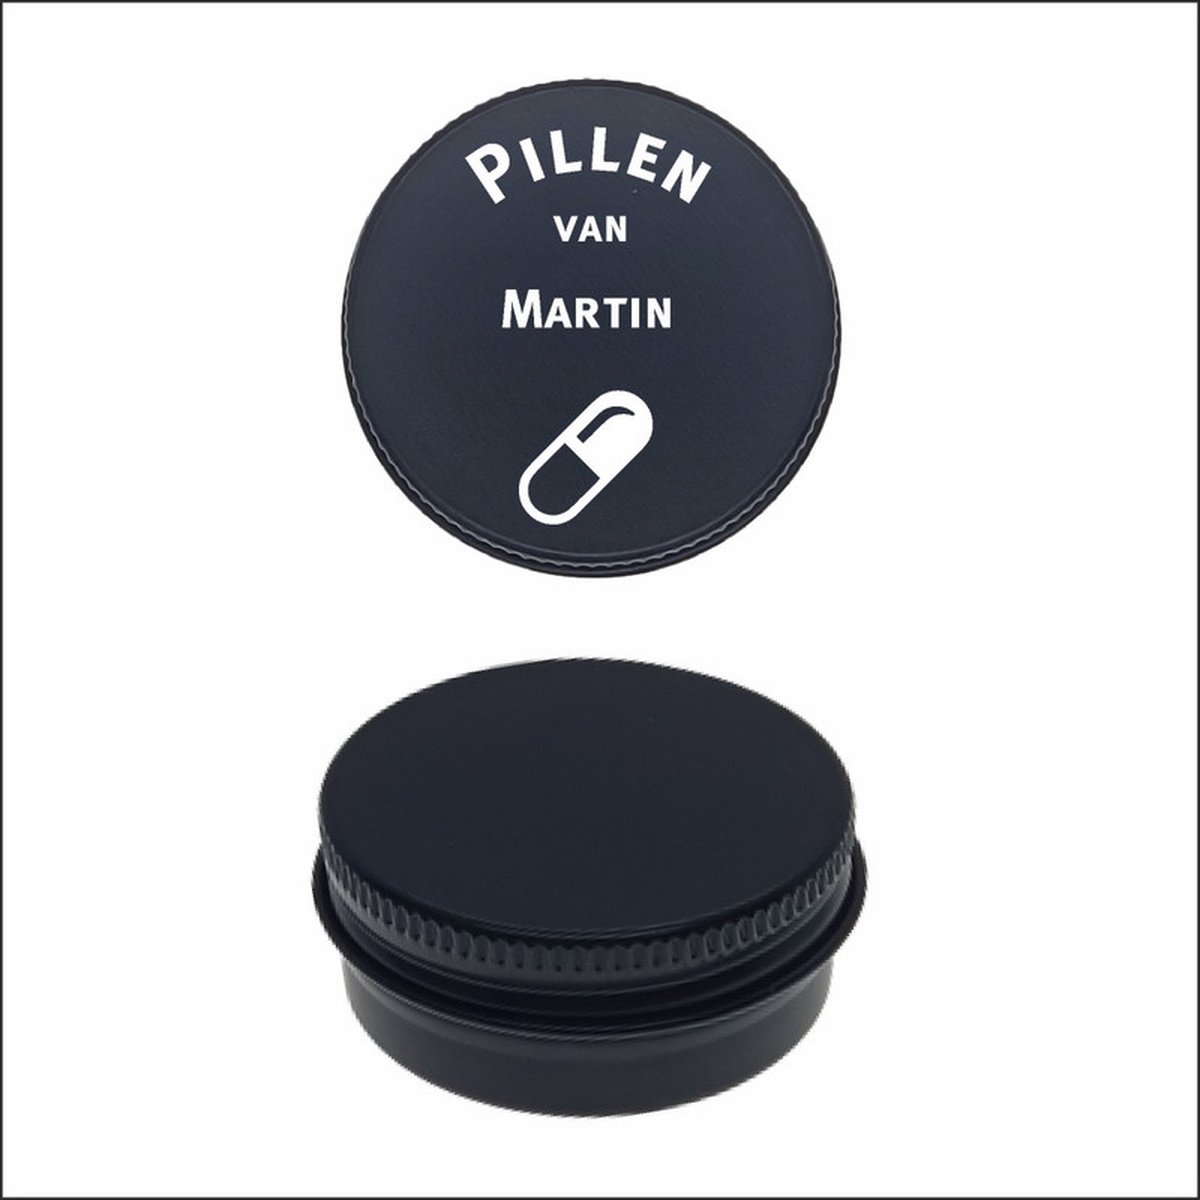 Pillen Blikje Met Naam Gravering - Martin